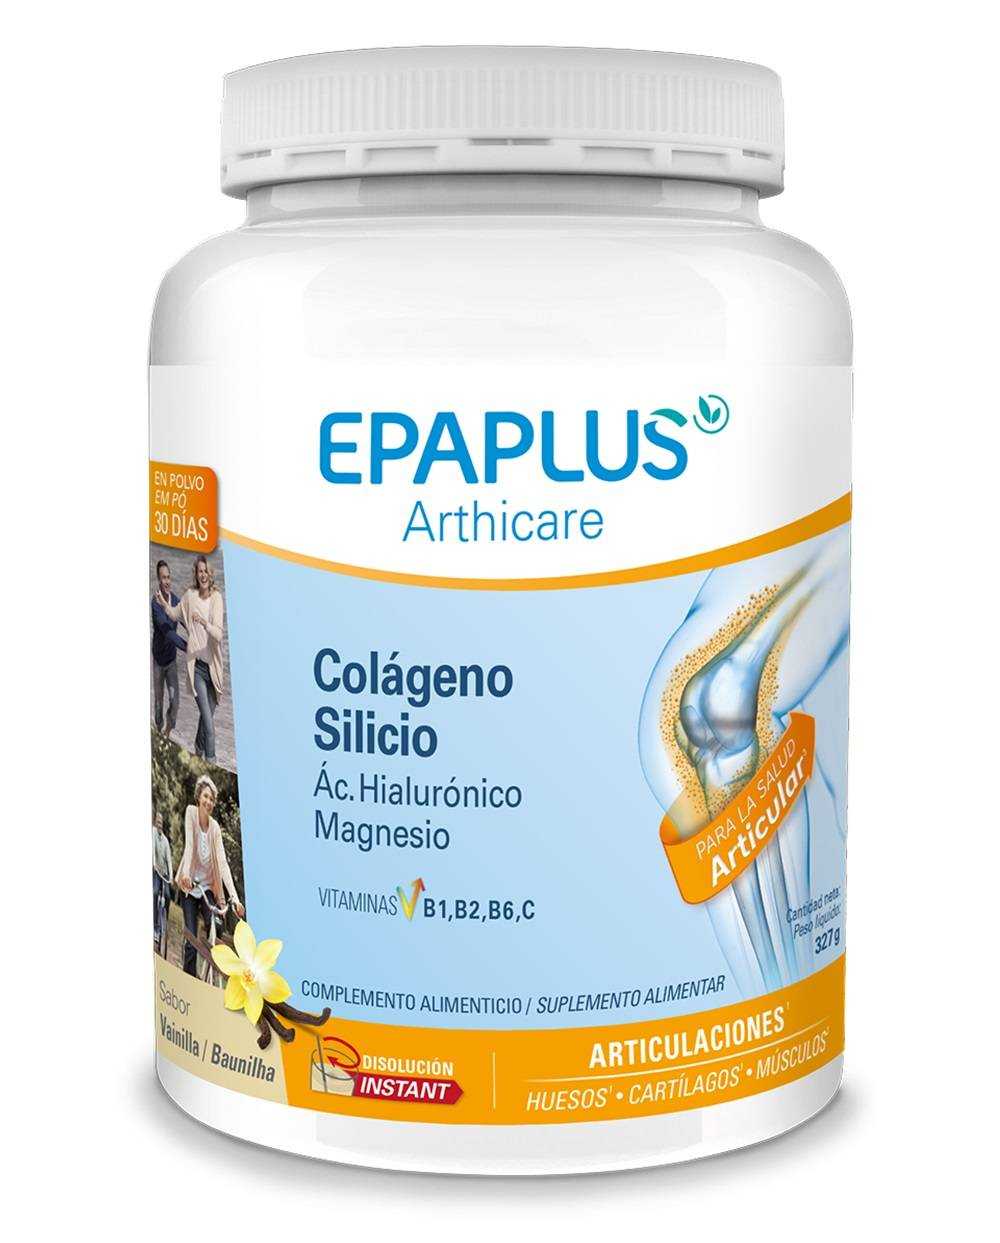 EPAPLUS Arthicare Colágeno + Silicio + Ácido Hialurónico INSTANT 
Sabor vainilla